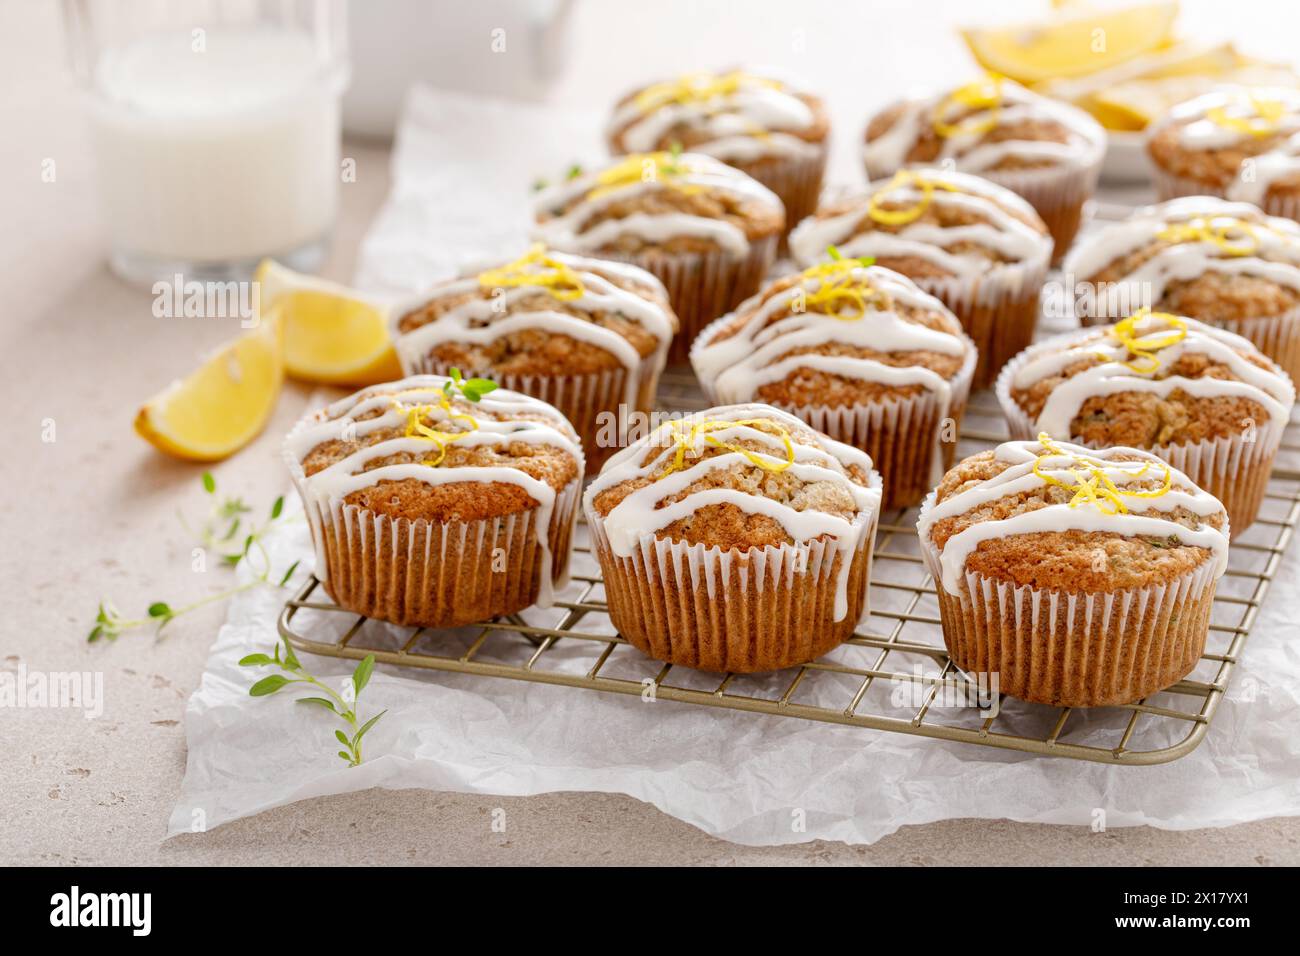 Muffins aux courgettes au citron arrosés de glaçage au sucre citron Banque D'Images